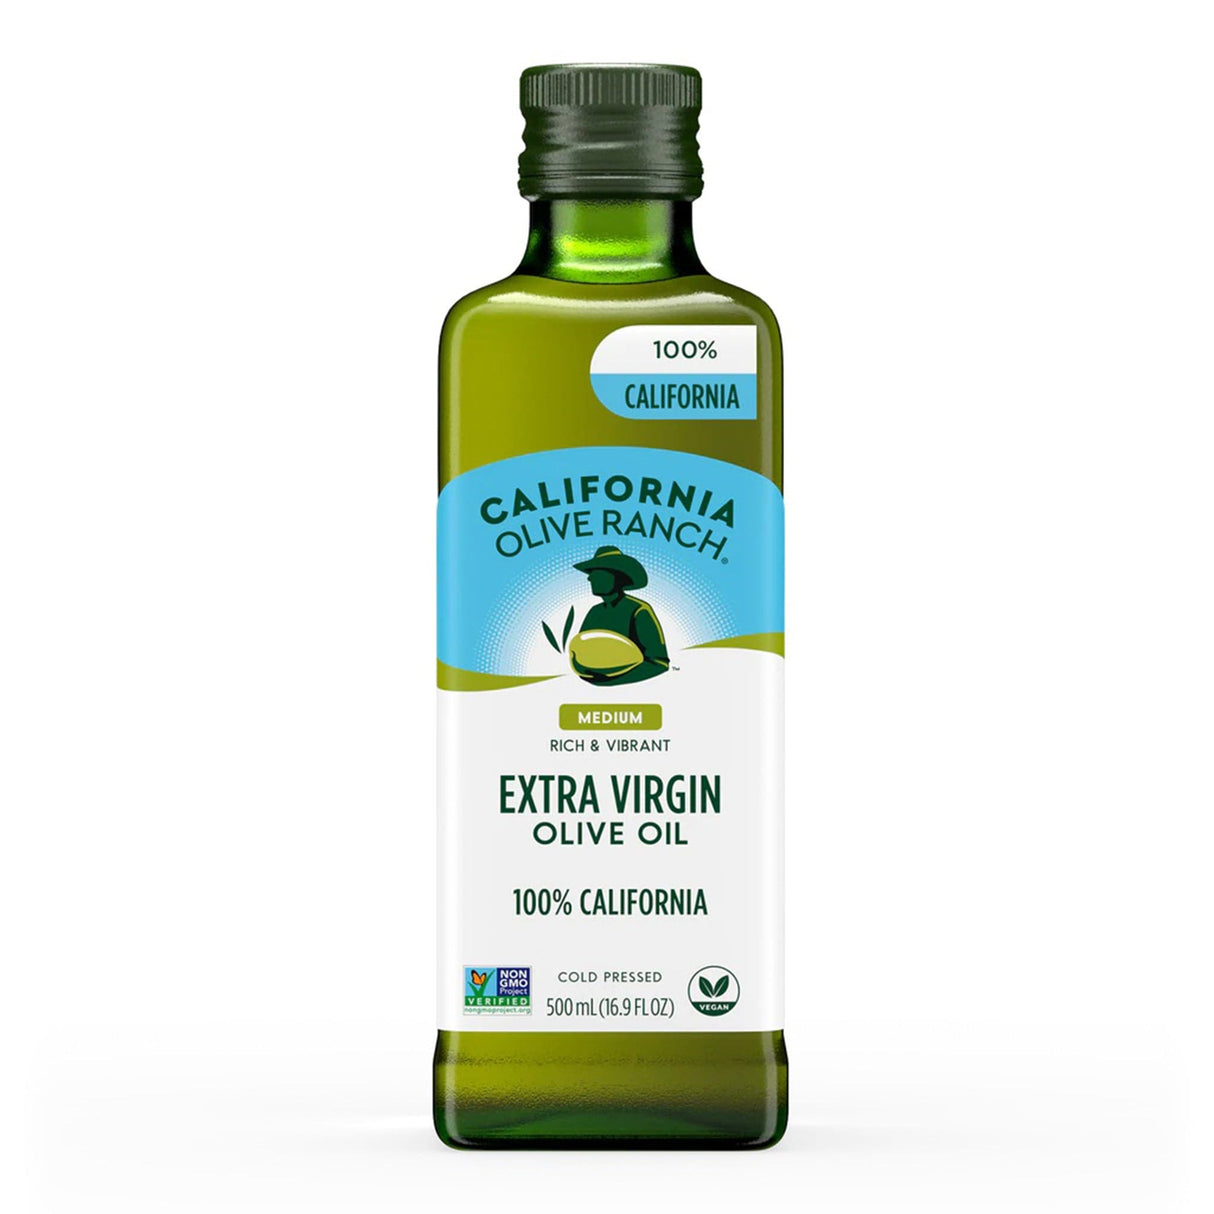 California Olive Ranch 100% California Extra Virgin Olive Oil (Medium)